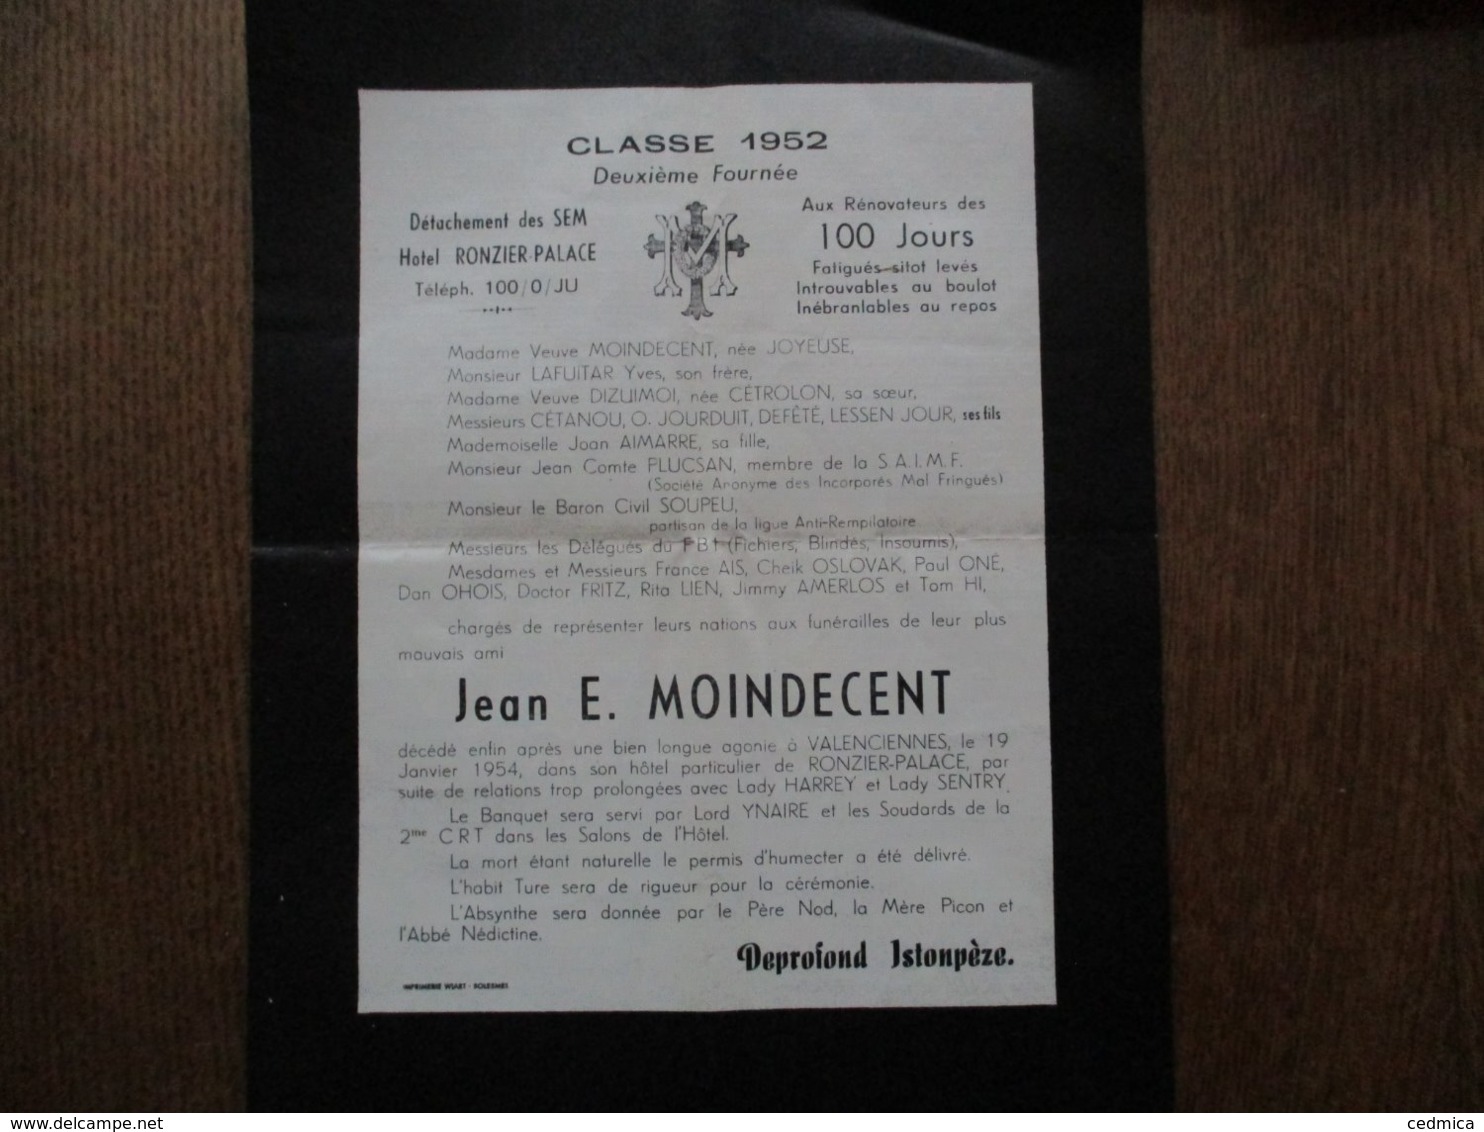 JEAN E. MOINDECENT CLASSE 1952 DEUXIEME FOURNEE DETACHEMENT DES SEM HOTEL RONZIER-PALACE - Documents